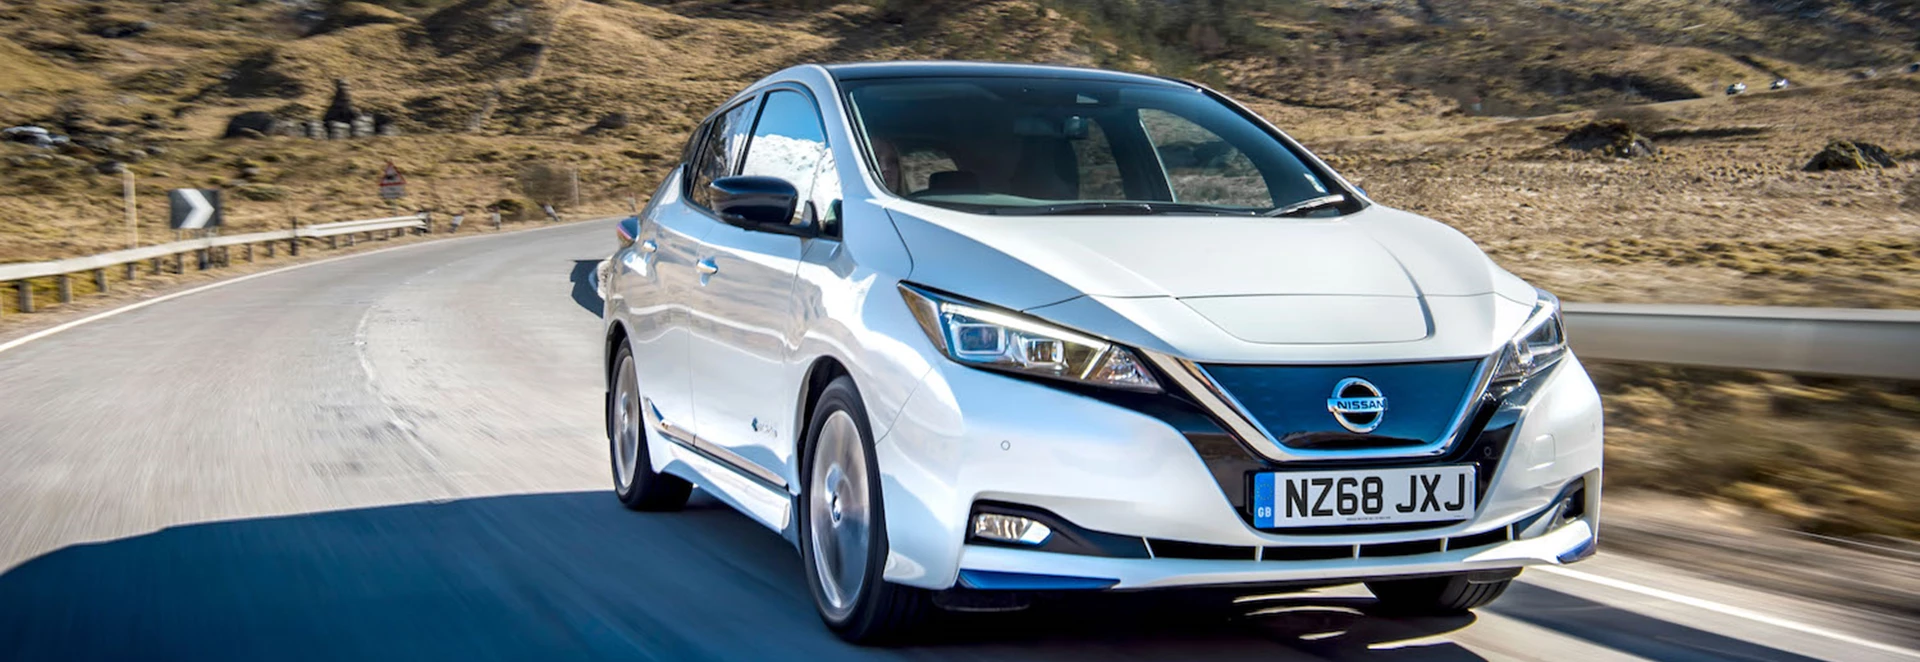 Nissan Leaf remains Europe’s most popular EV